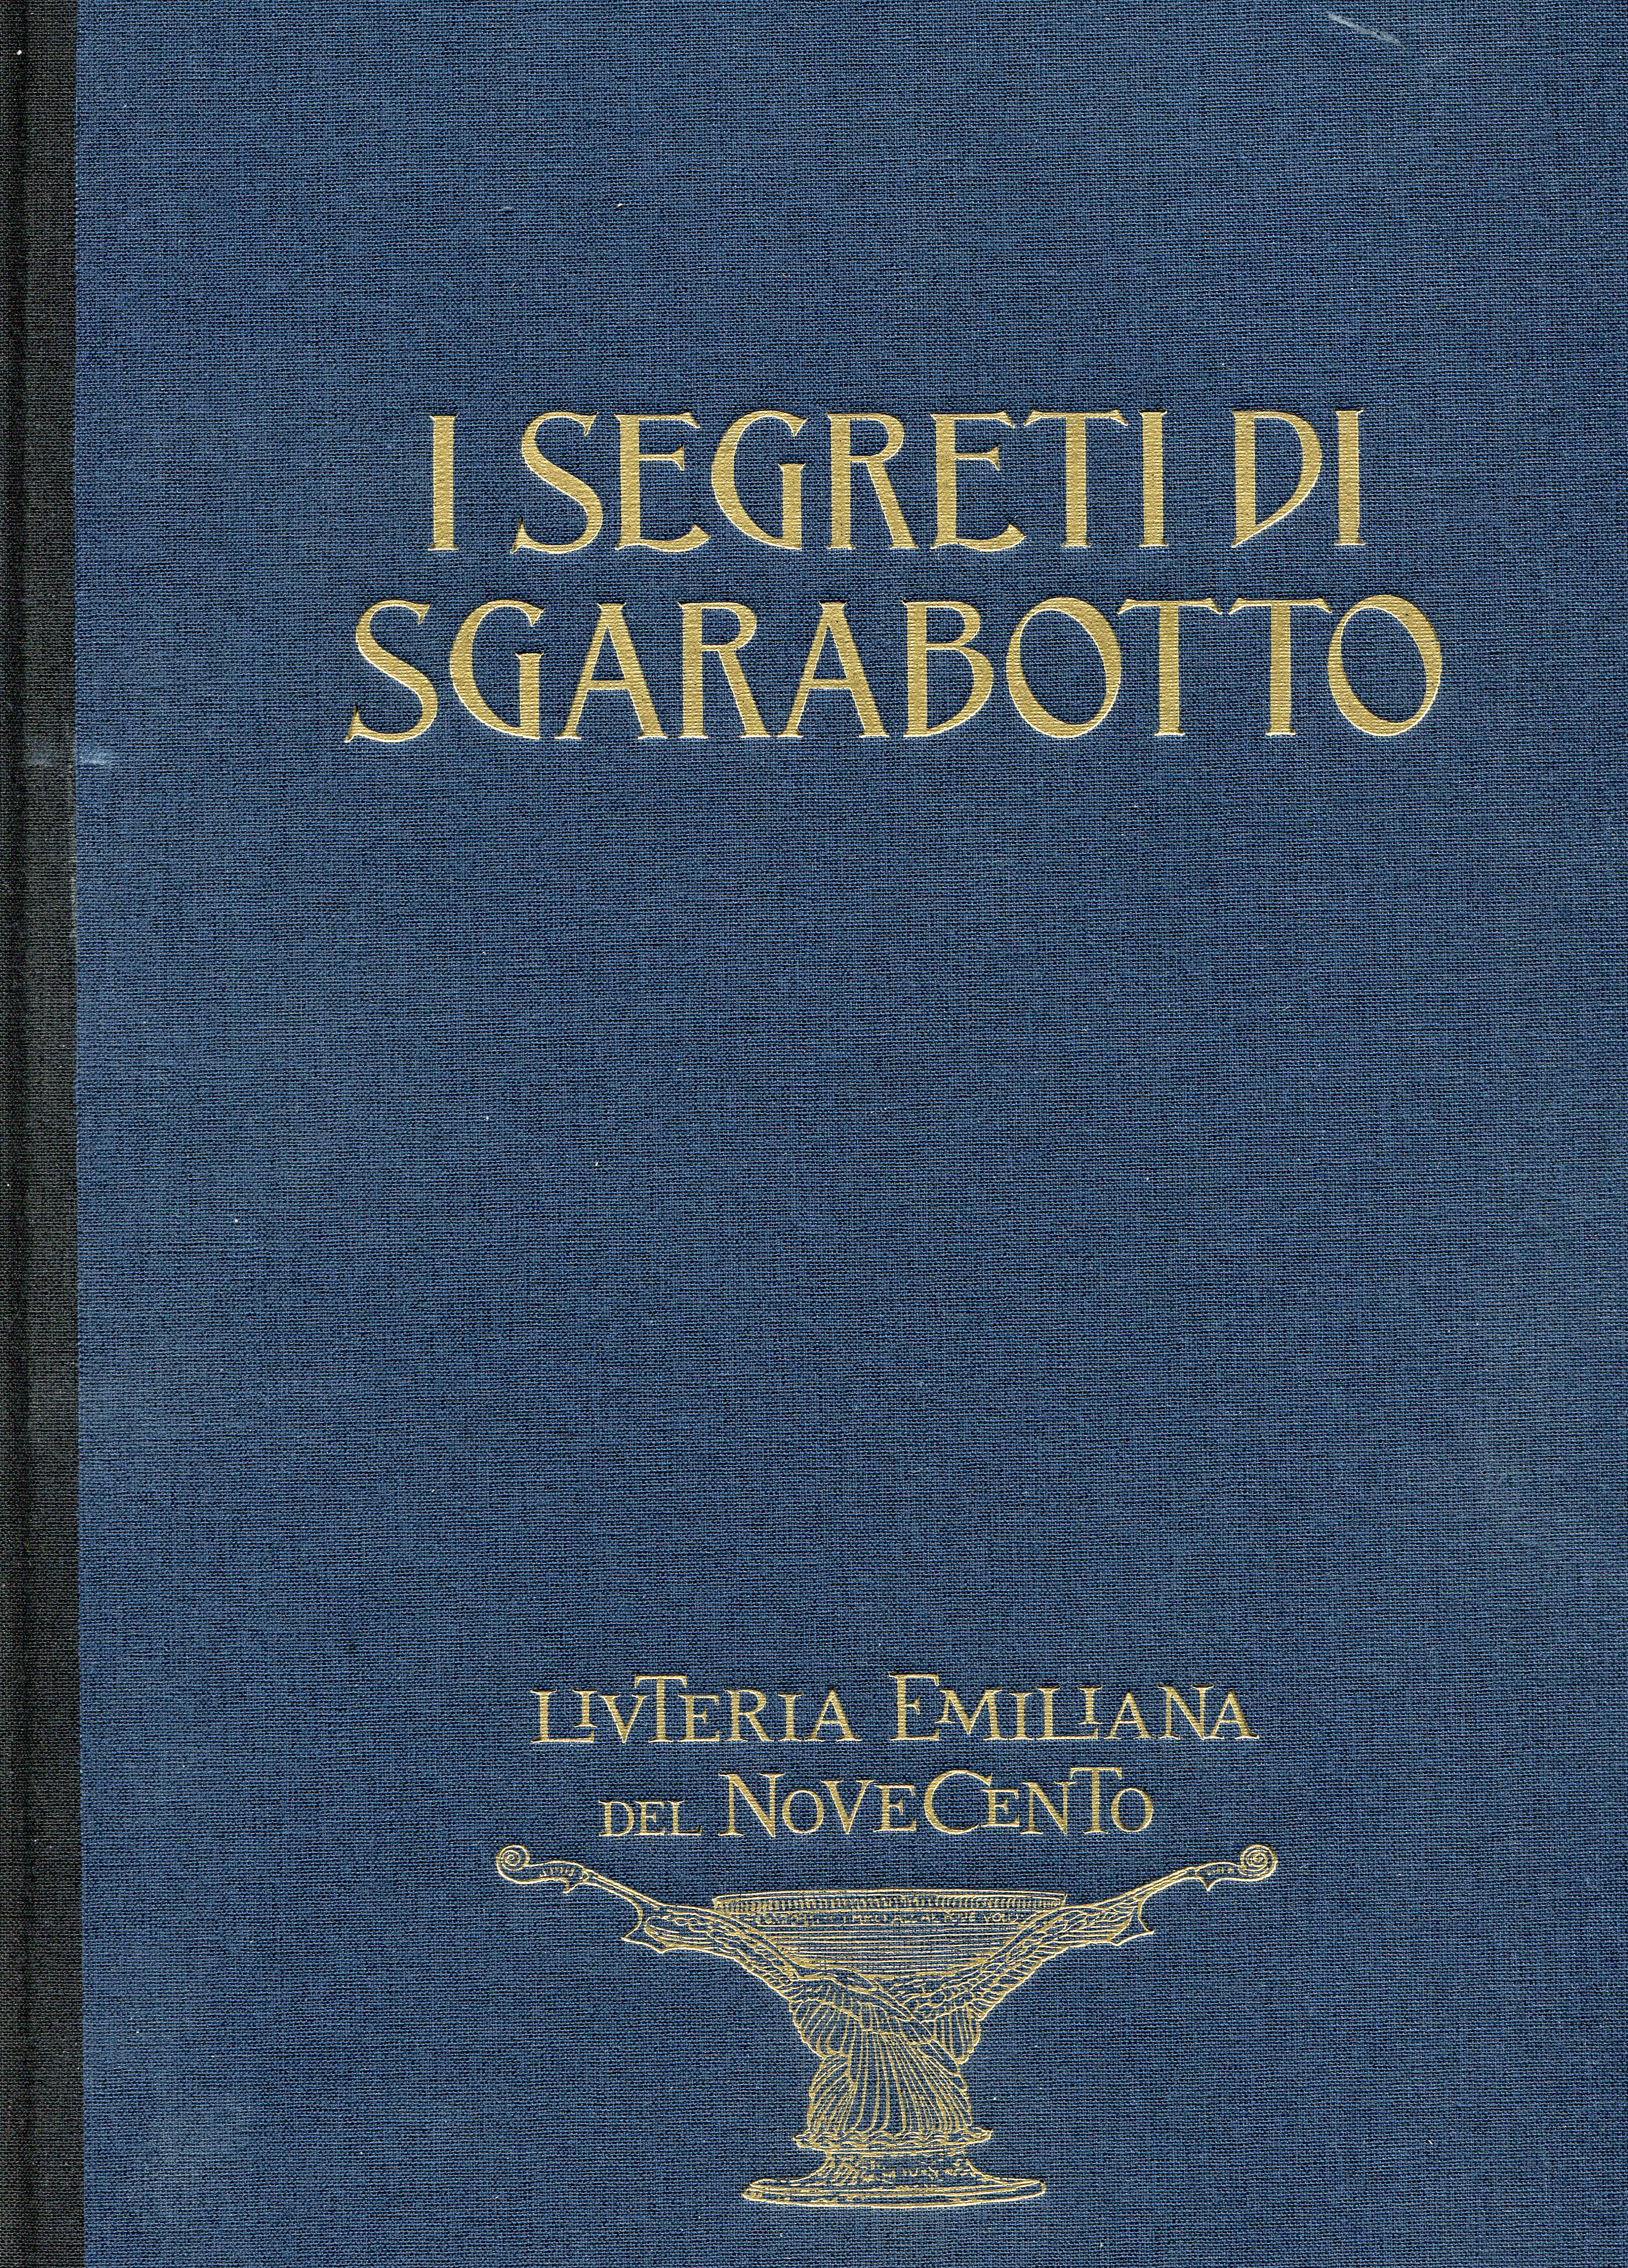 Scrollavezza - Zanre: I segreti di Sgarabotto